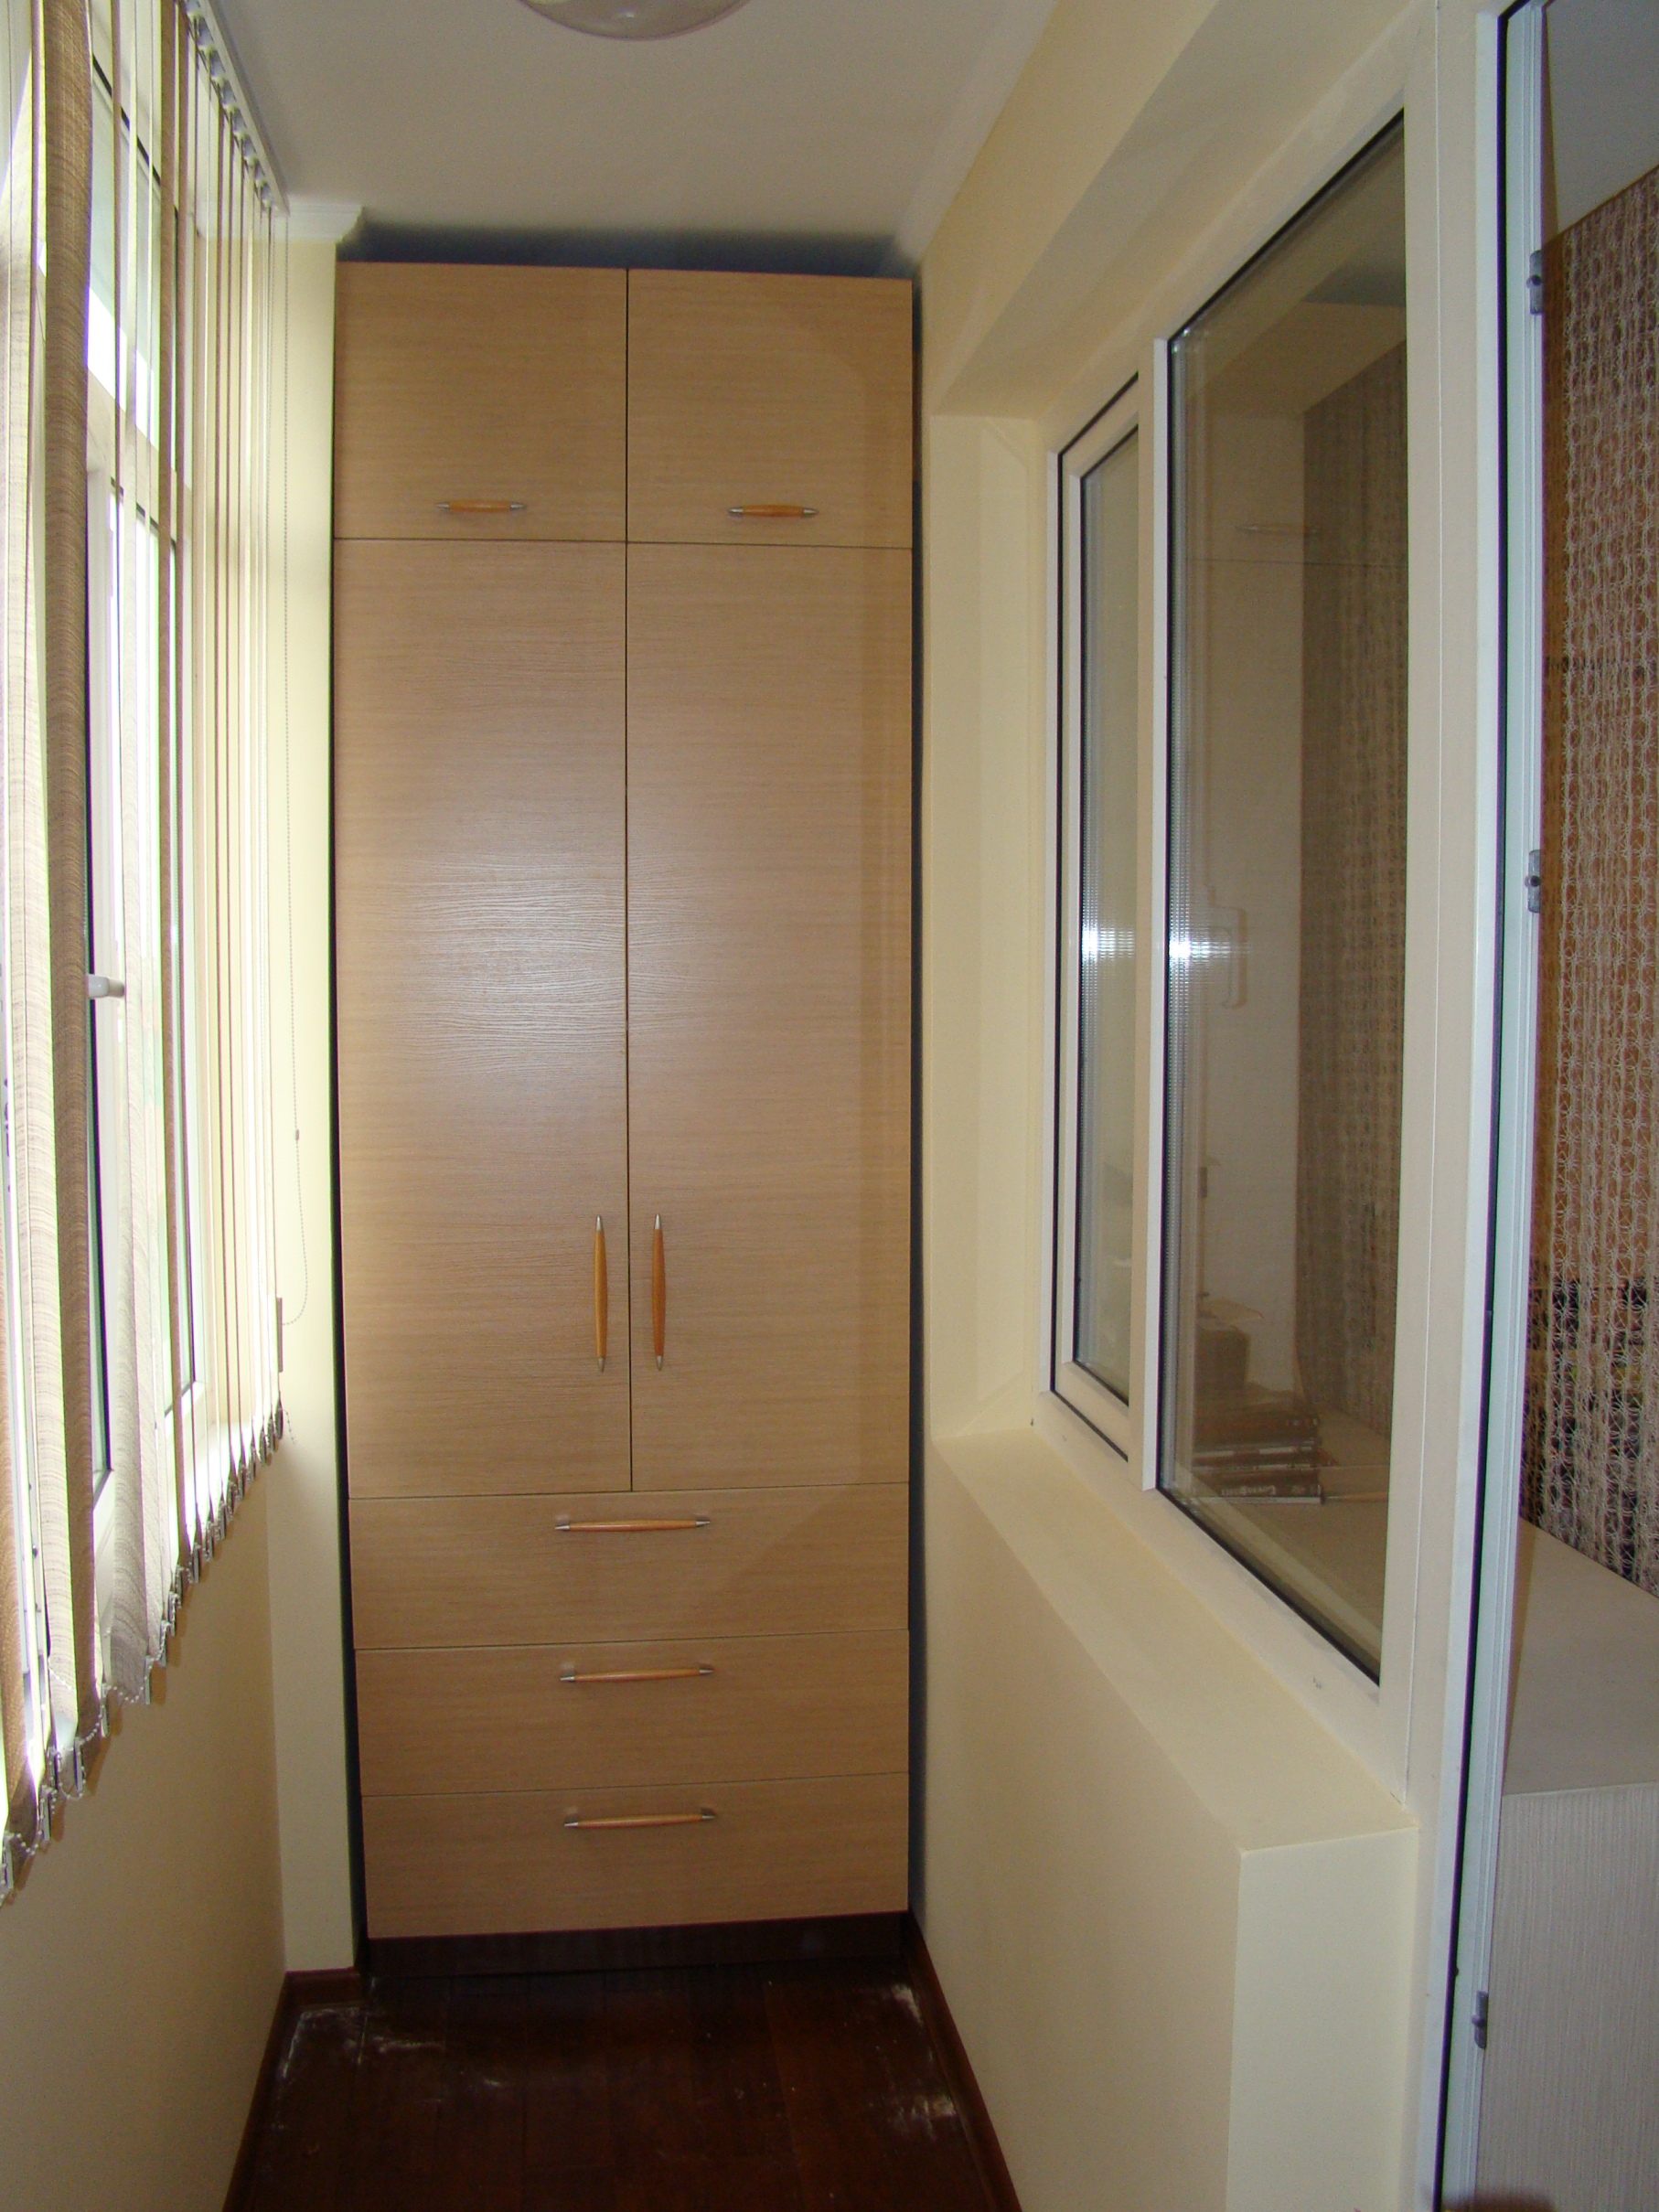 Шкафы на лоджию и балкон, шкаф-купе на балкон, балконный шкаф, мебель для лоджий и балконов на заказ в санкт-петербурге (спб).
